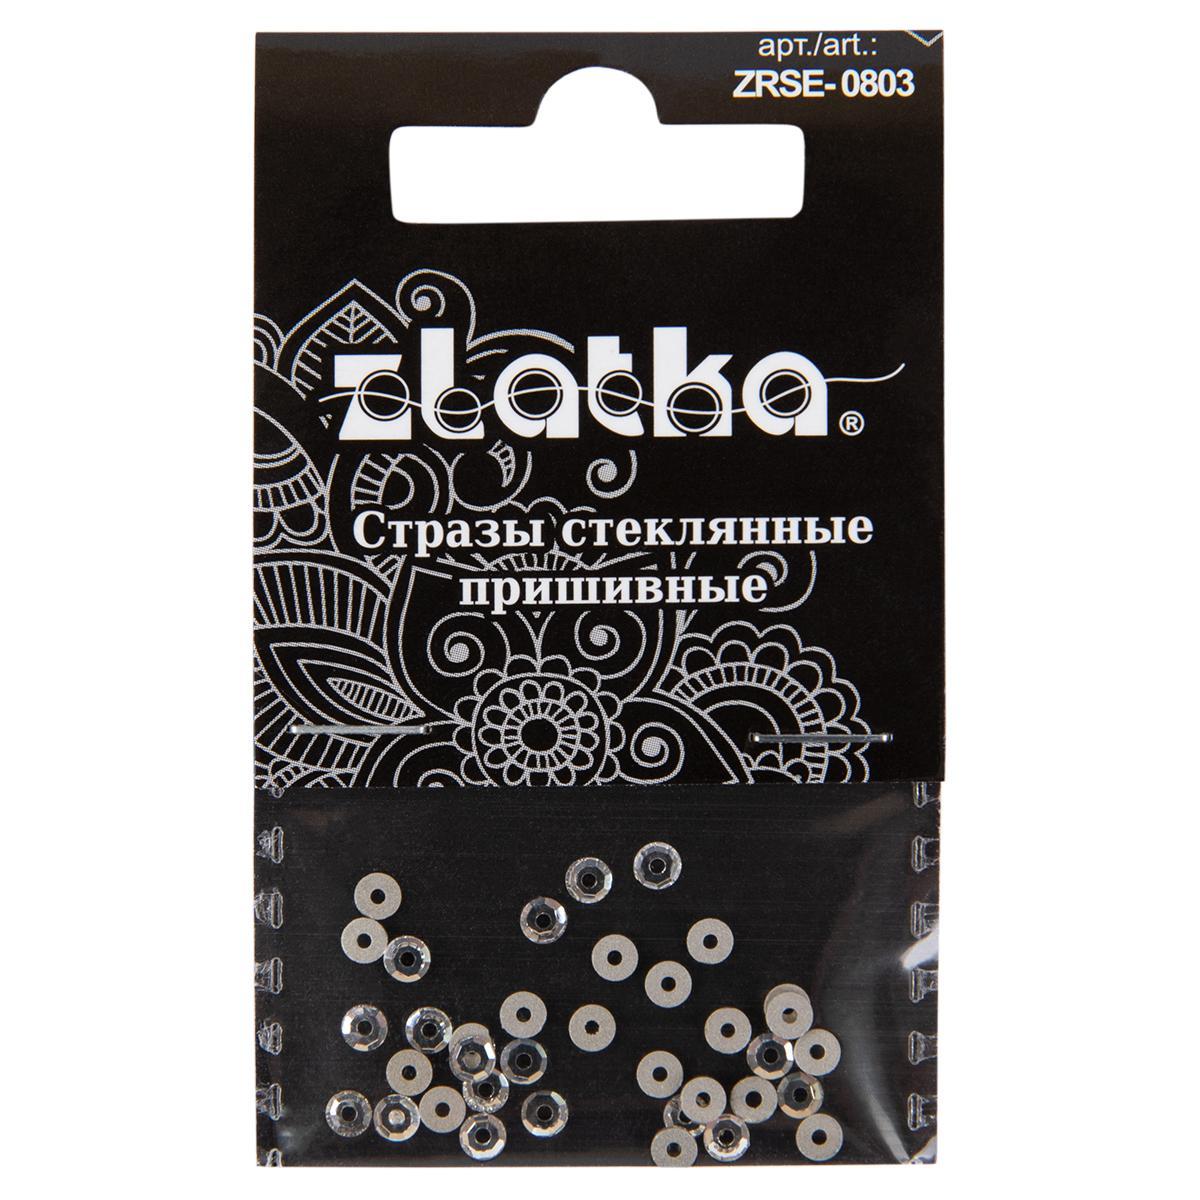 Страз "Zlatka" ZRSE-0803 Crystal 3 мм стекло 5 x 36 шт в пакете с картонным еврослотом